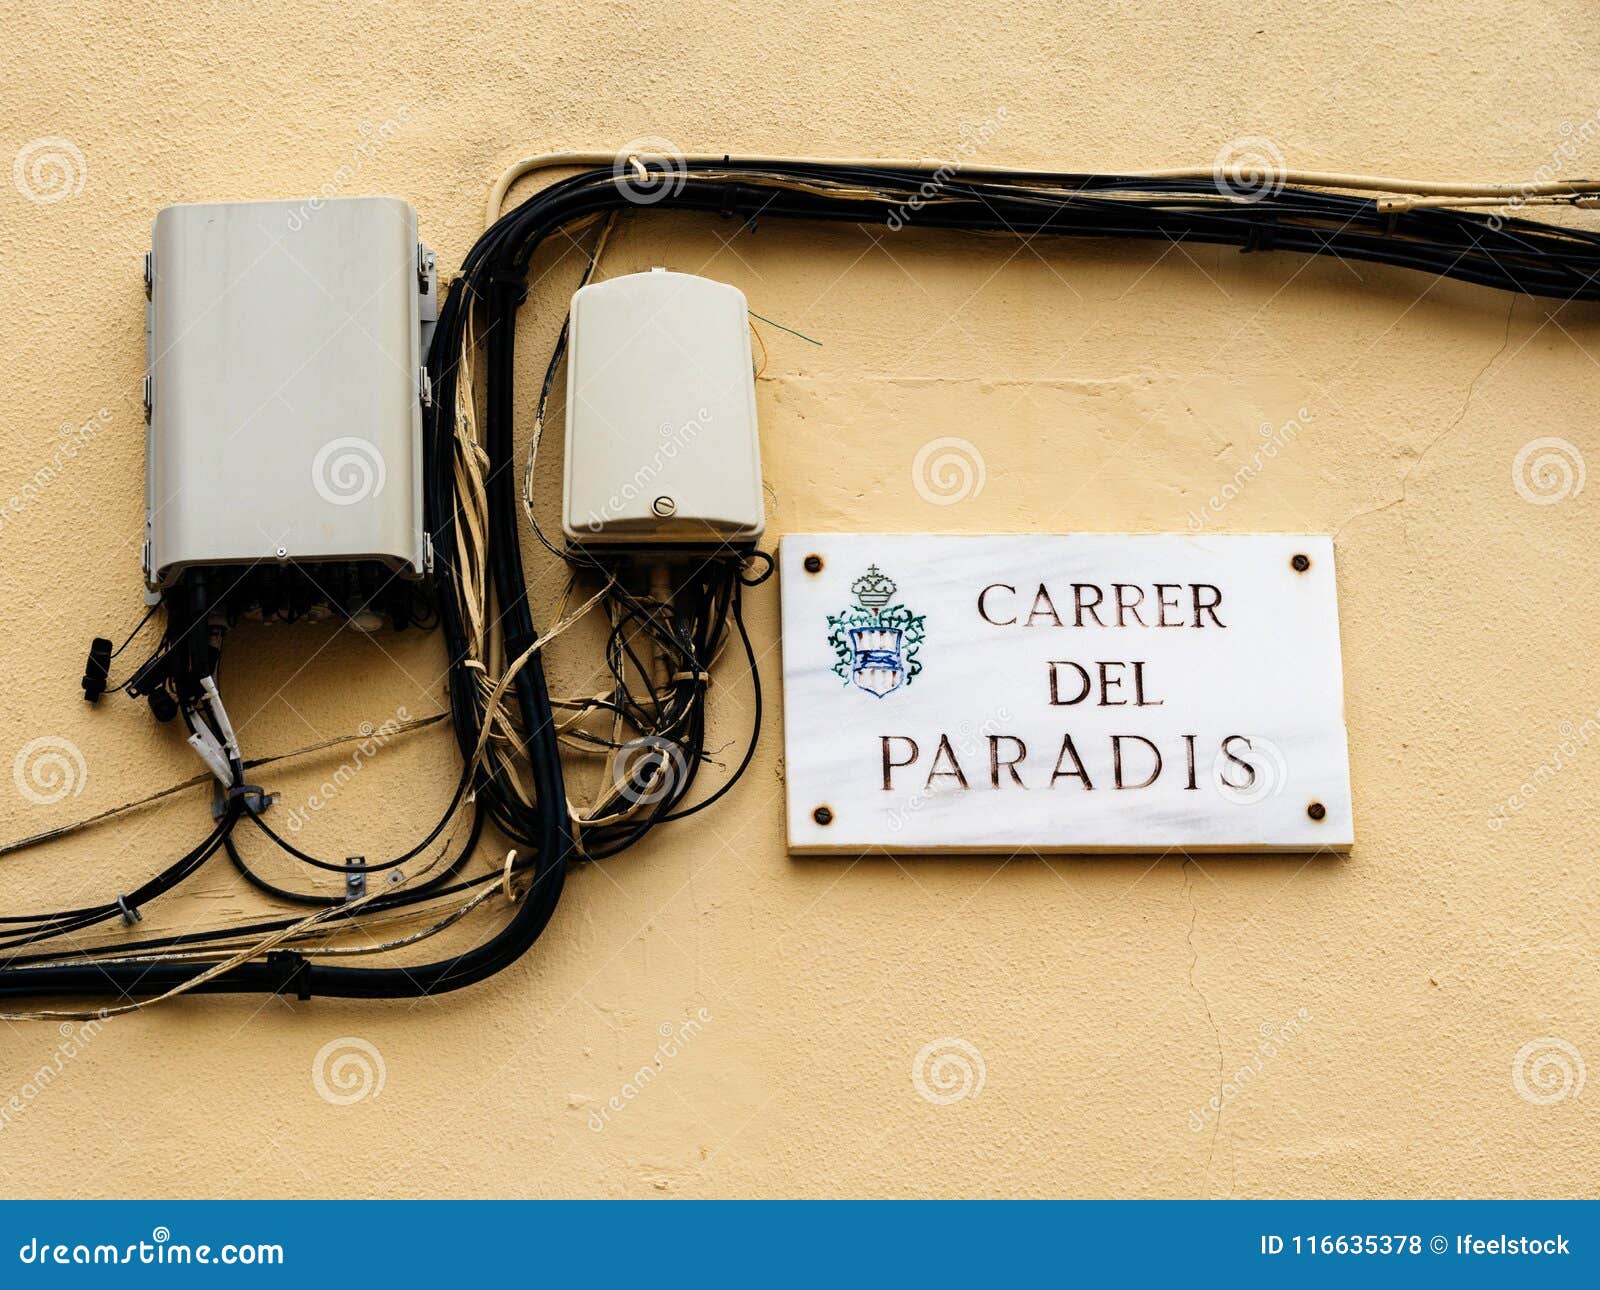 carrer del paradis street name plaque with optic fiber hub